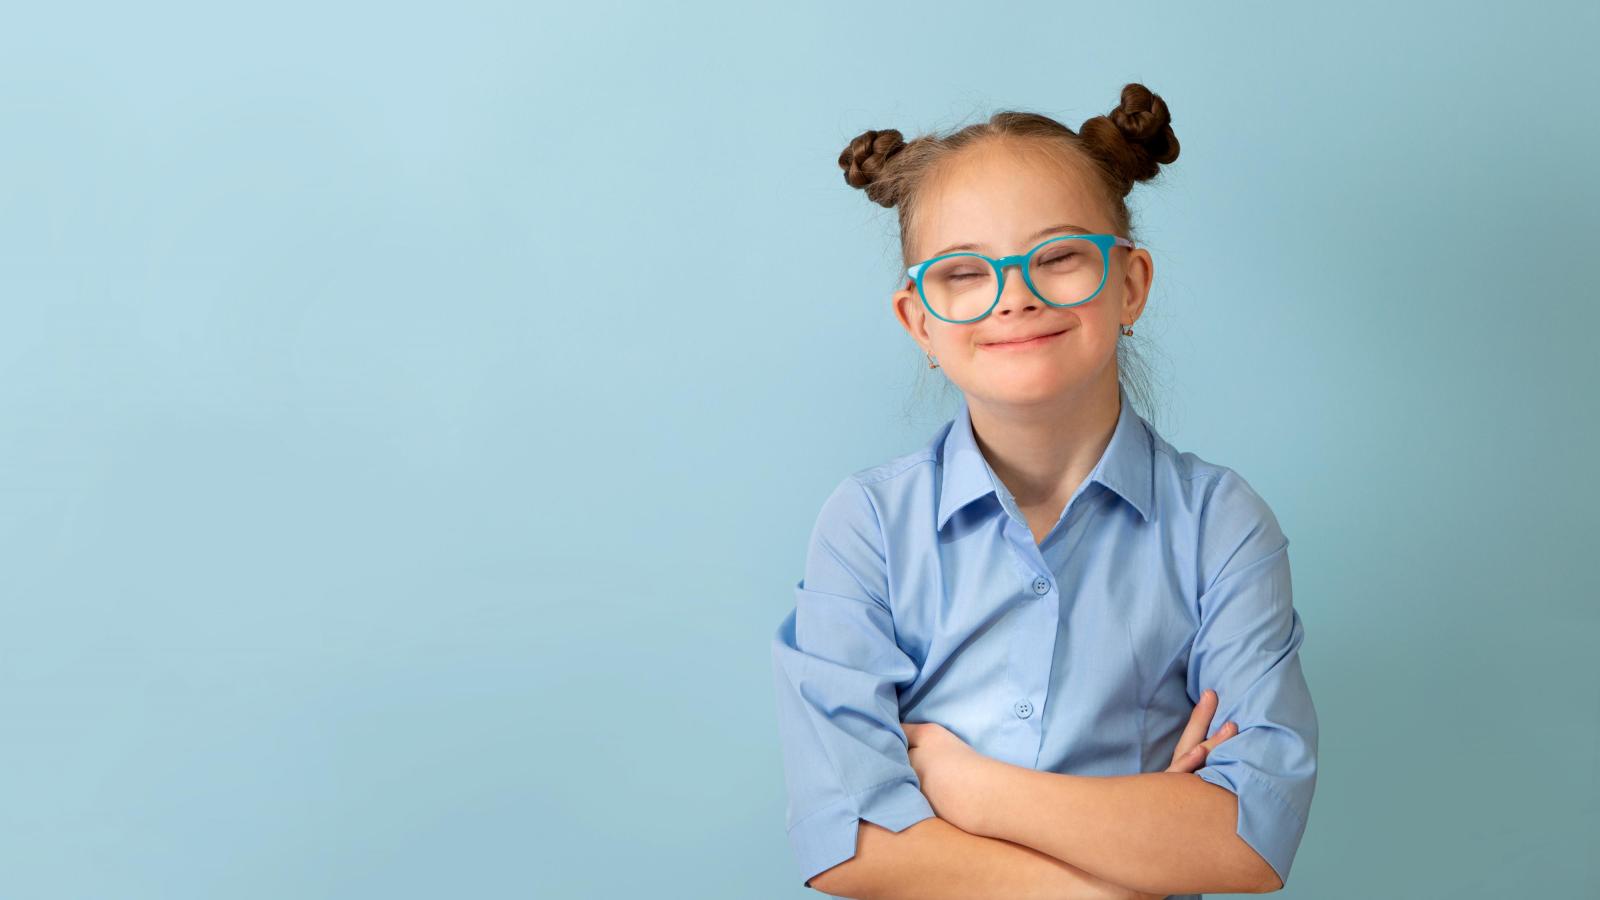 Mädchen mit Down-Syndrom steht lächelnd mit verschränkten Armen vor einem hellblauen Hintergrund